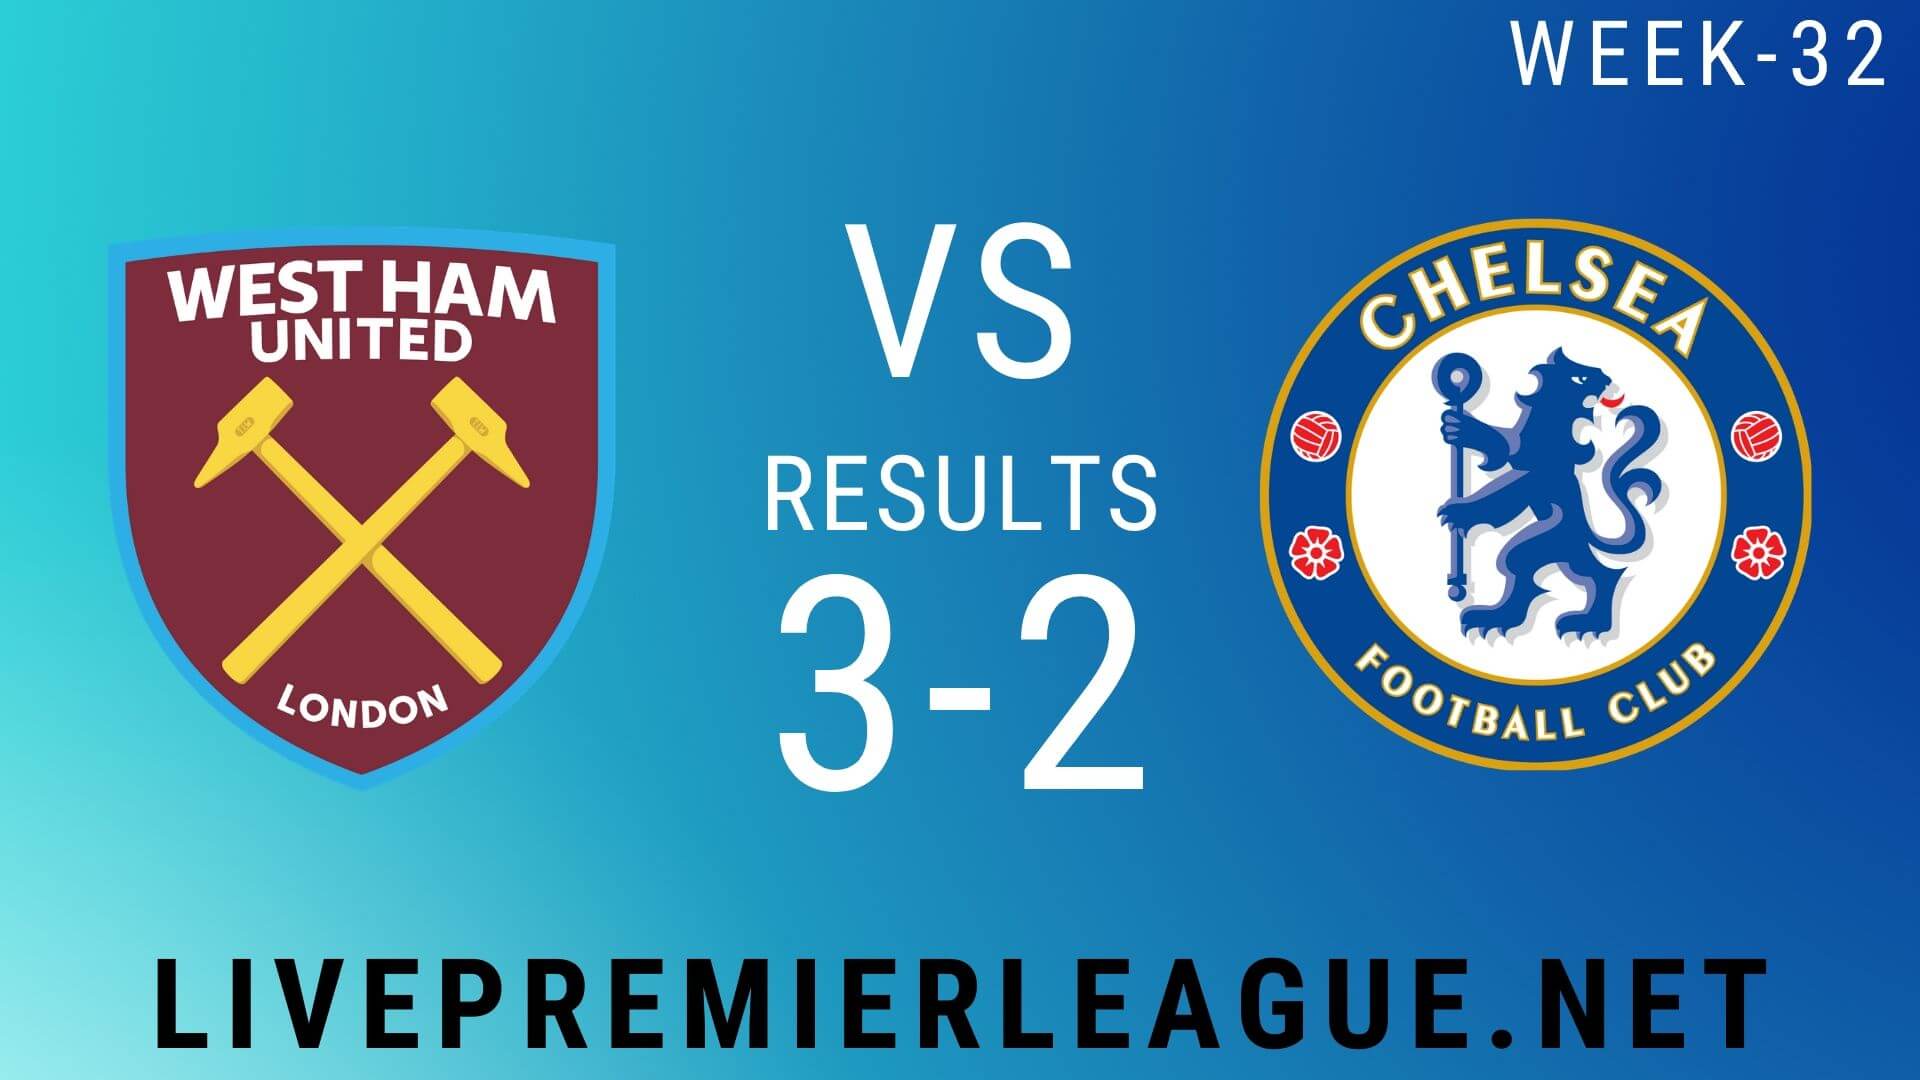 West Ham United Vs Chelsea | Week 32 Result 2020